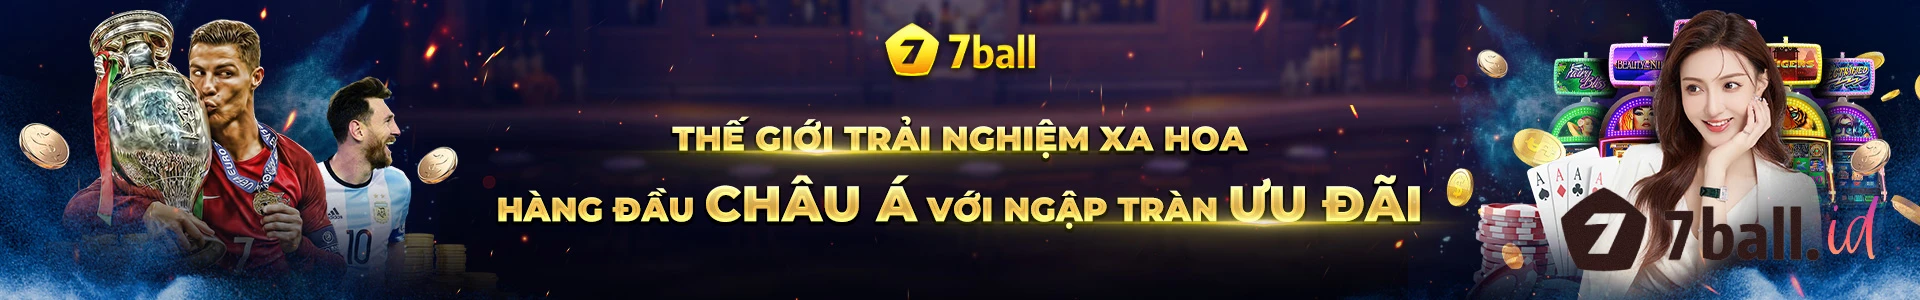 7ball khuyến mãi miễn phí